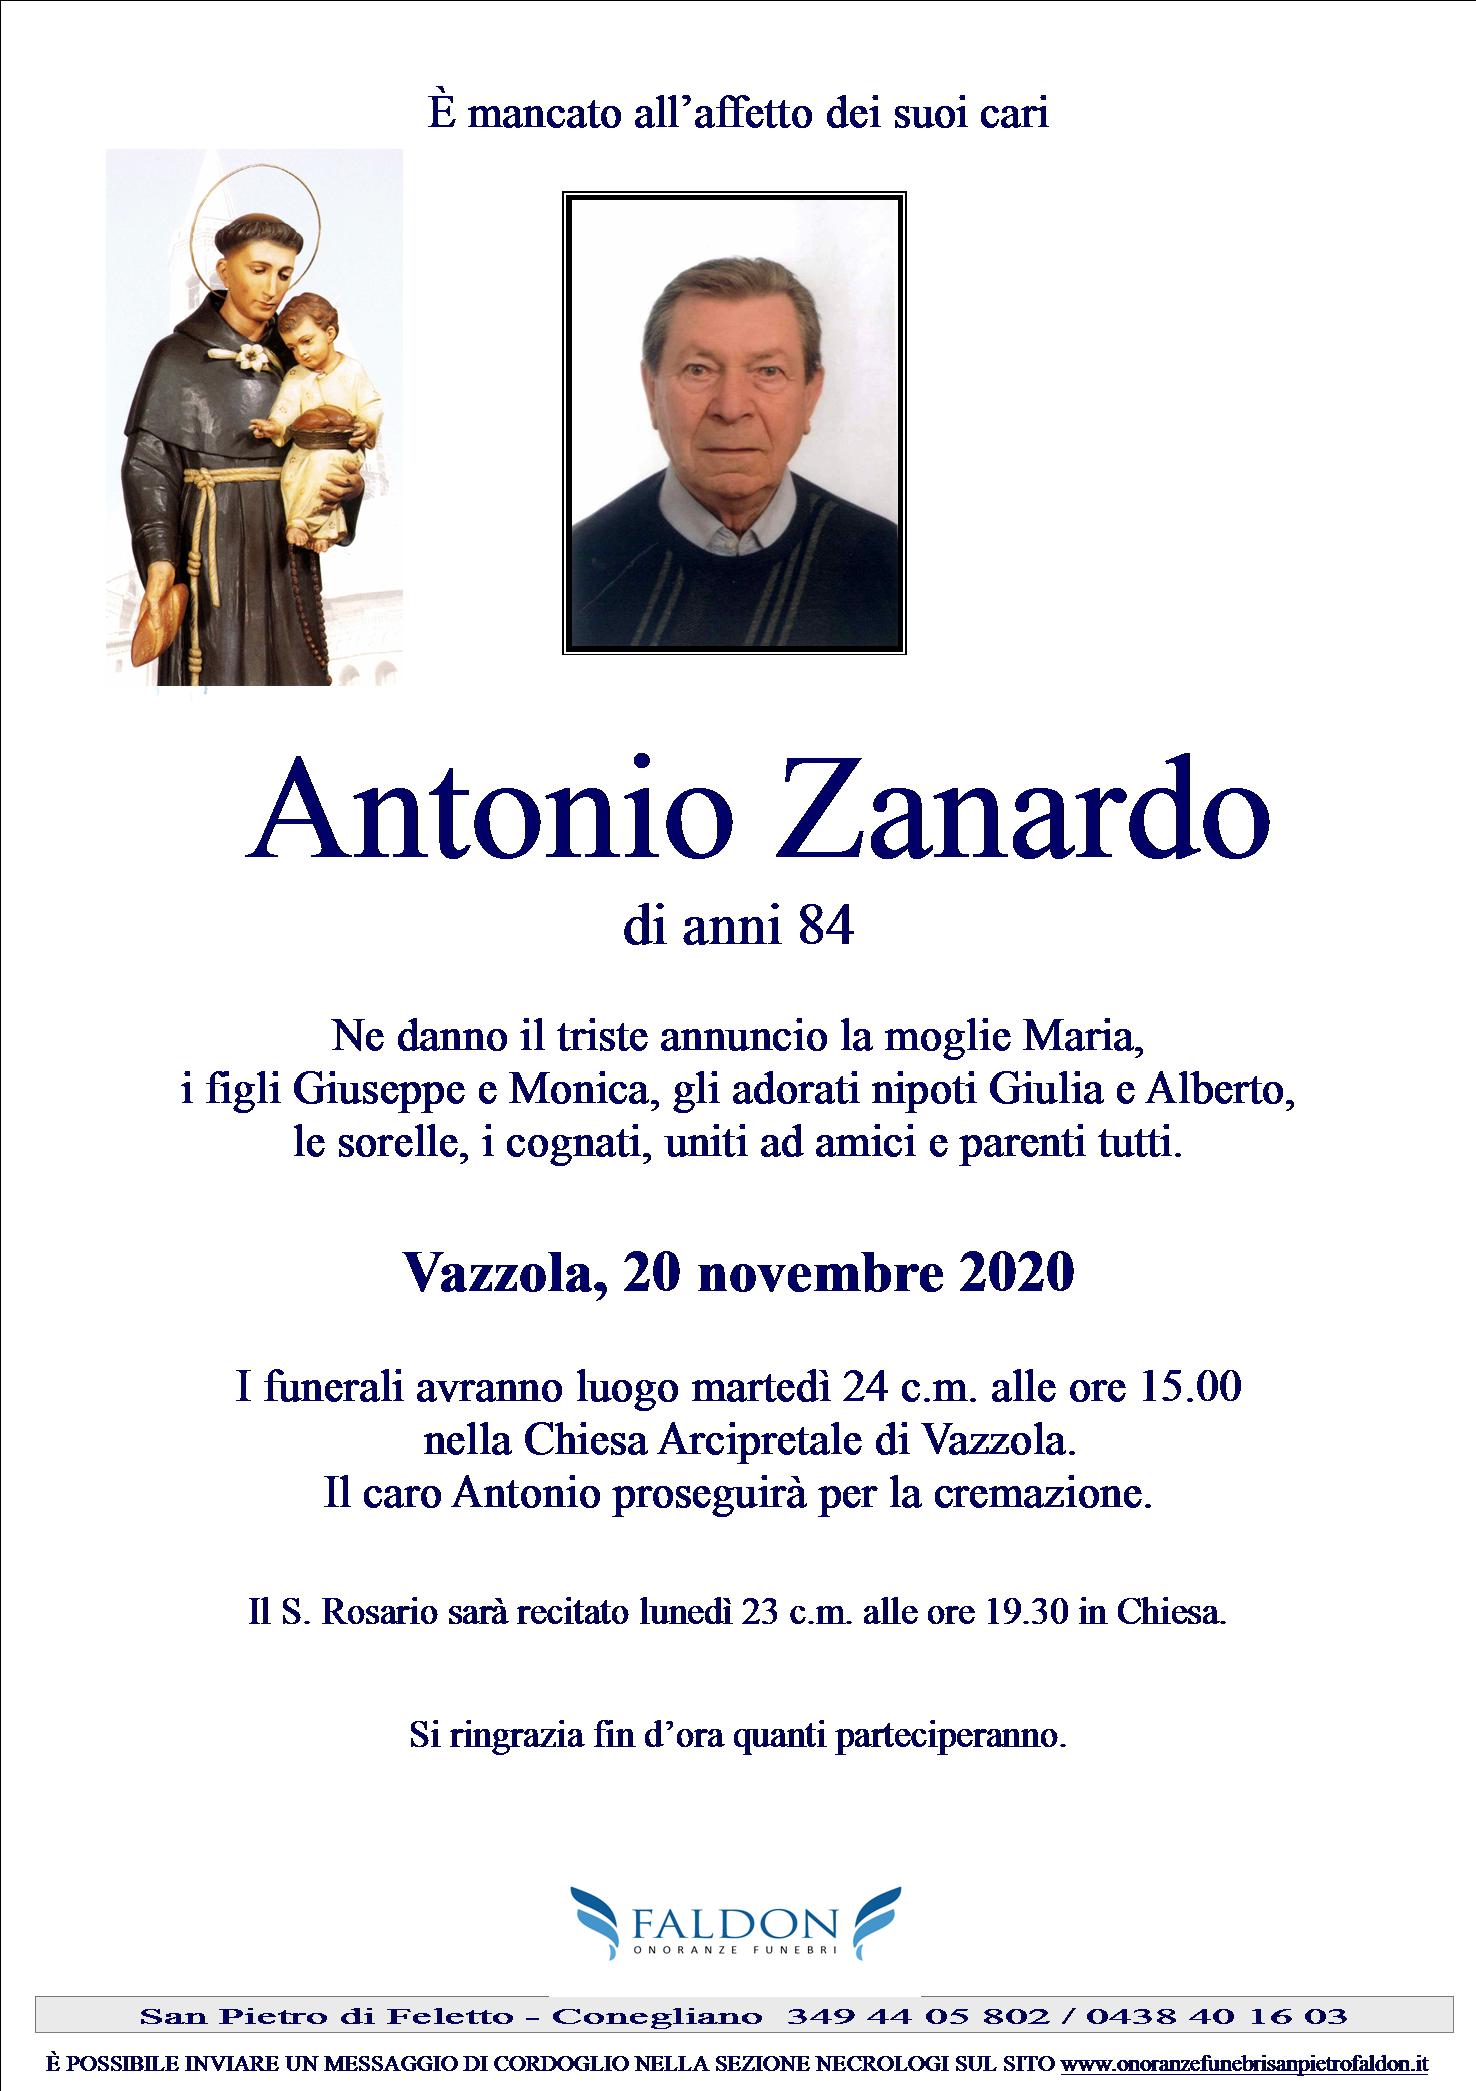 Antonio Zanardo